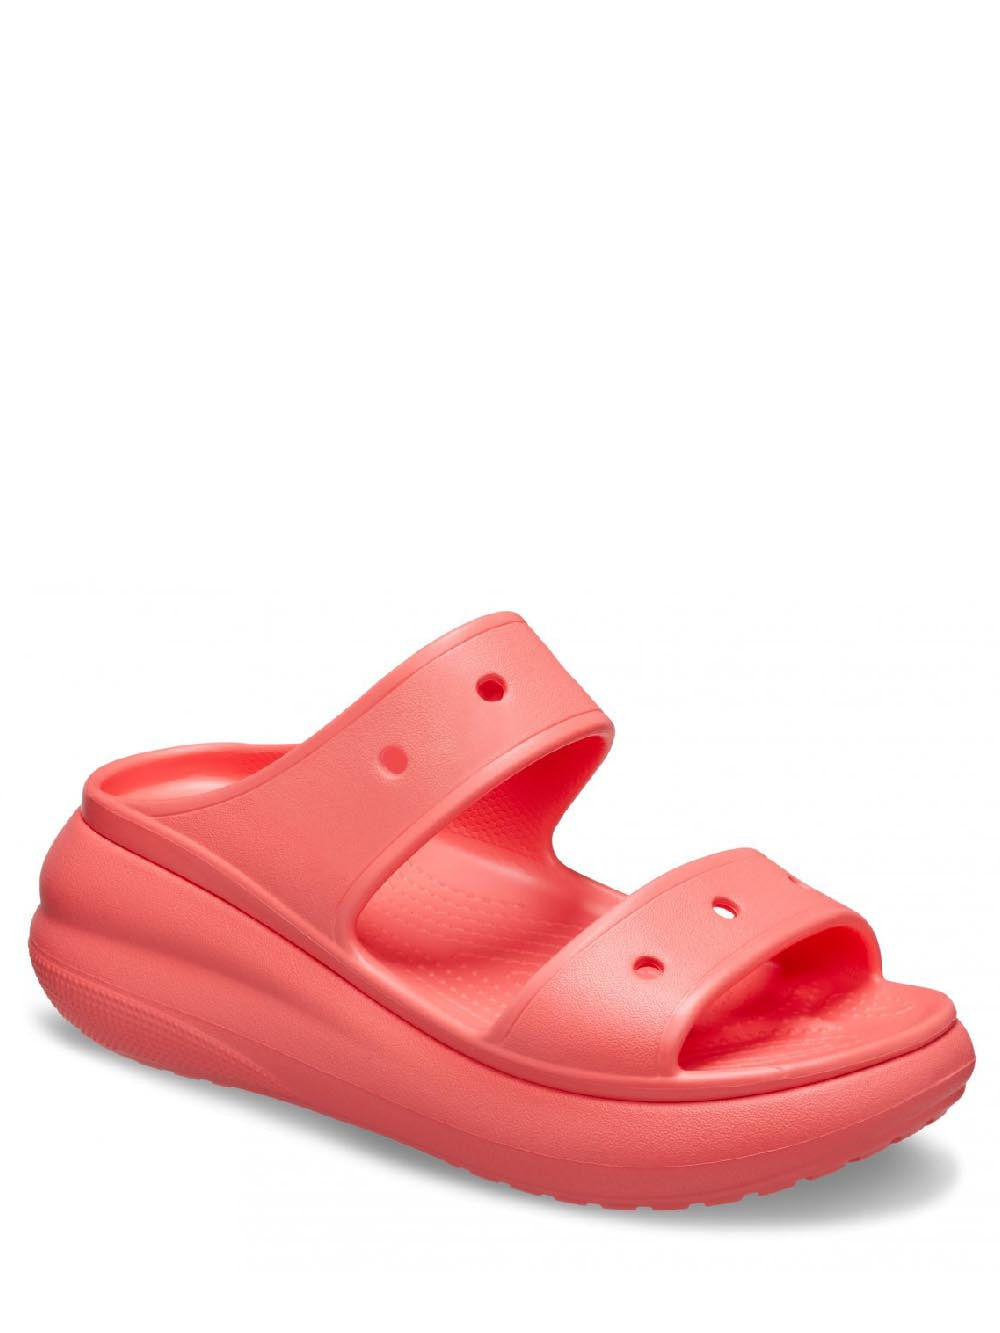 Crocs Sandalo Donna Arancione